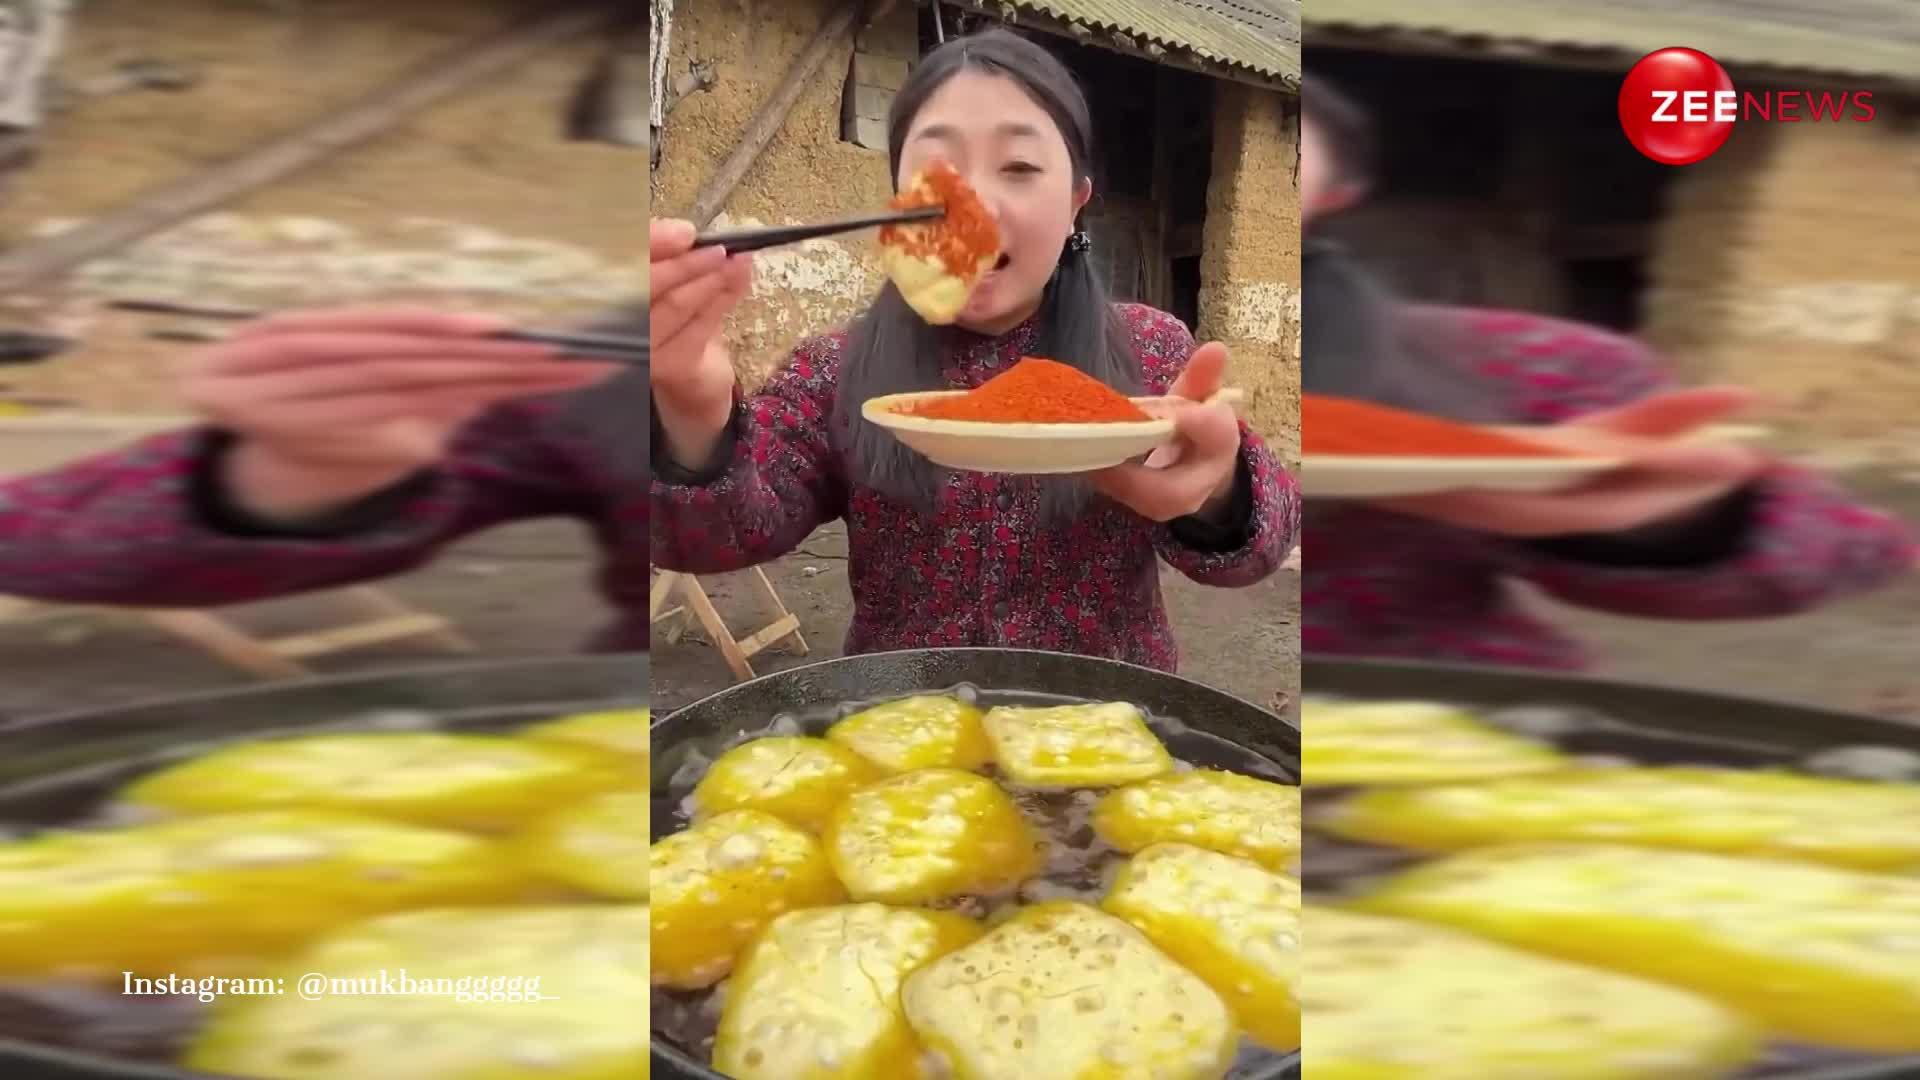 उबलते तेल से उठाकर मिर्ची में डाल तोफू खाने लगी चाइनीज महिला, देख लोग बोले- हे प्रभू अवतार लो